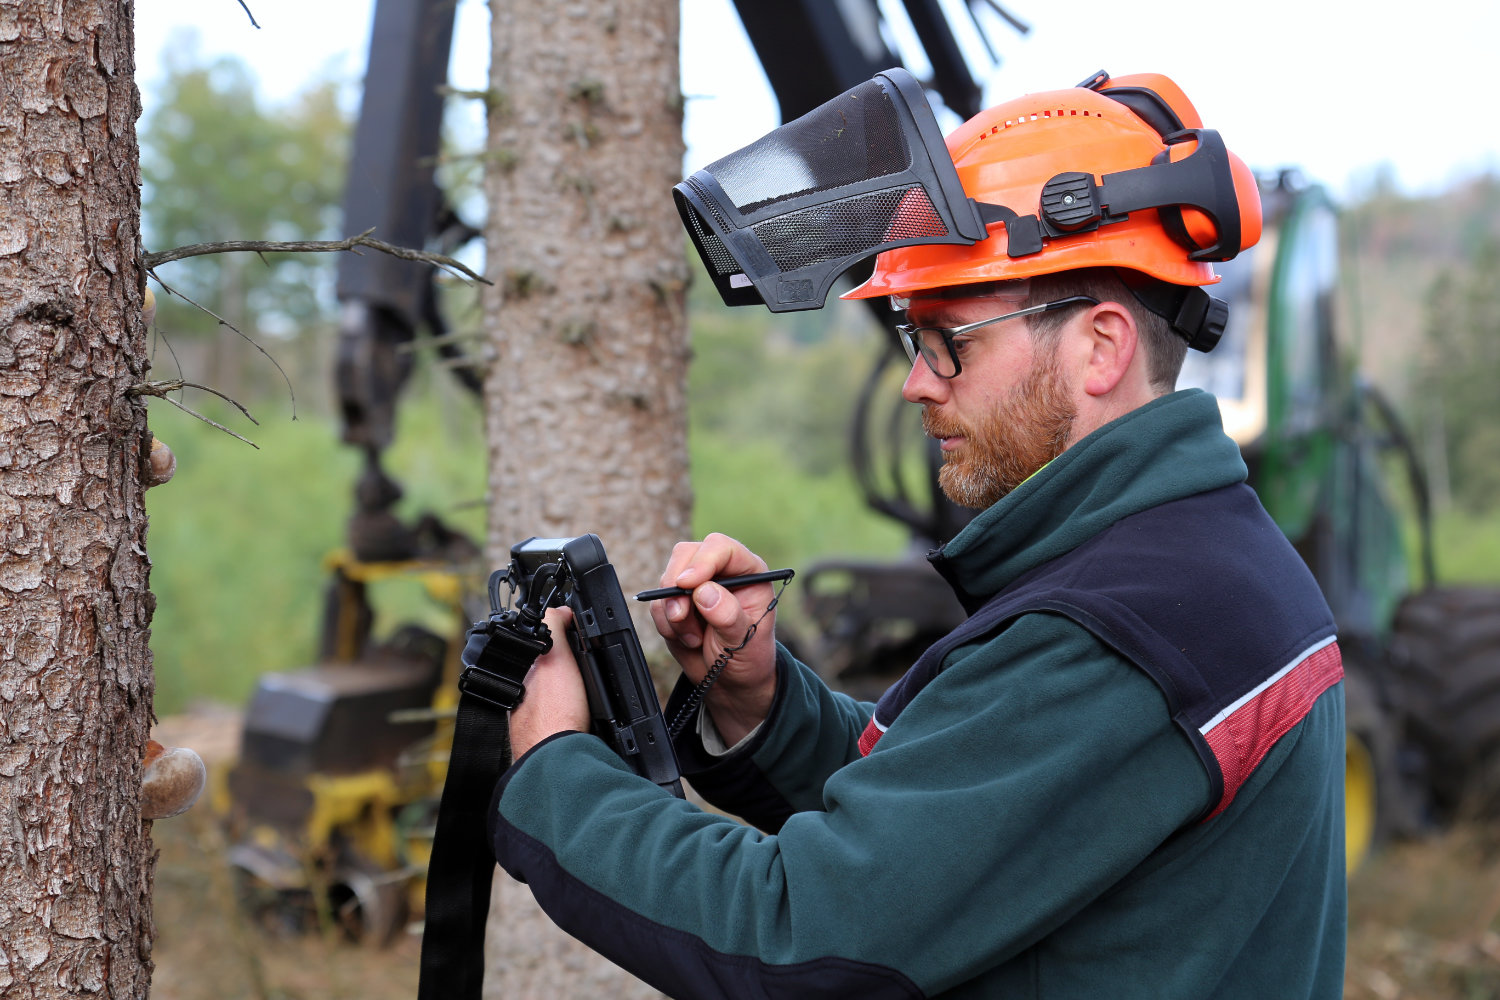 Ein Forstarbeiter erfasst Schädlinge, welche die sichere Fällung der Bäume gefährten könnten, mittels eines Outdoor-Tablets. Im Hintergund ein Harvester.